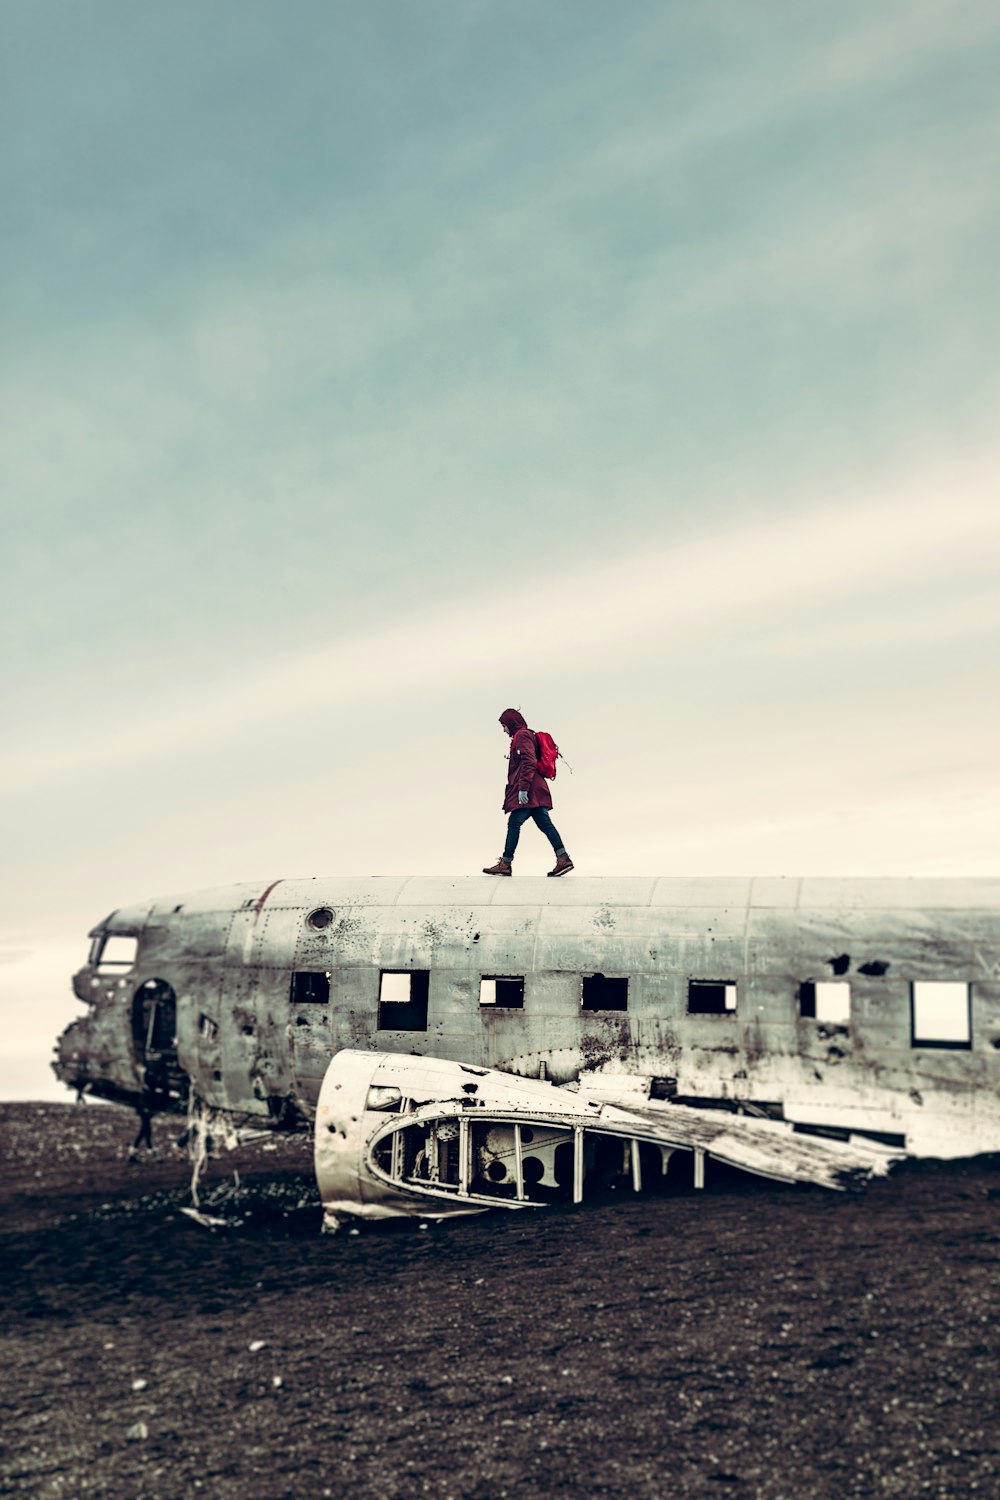 난파된 비행기 위를 걷고 있는 사람의 사진